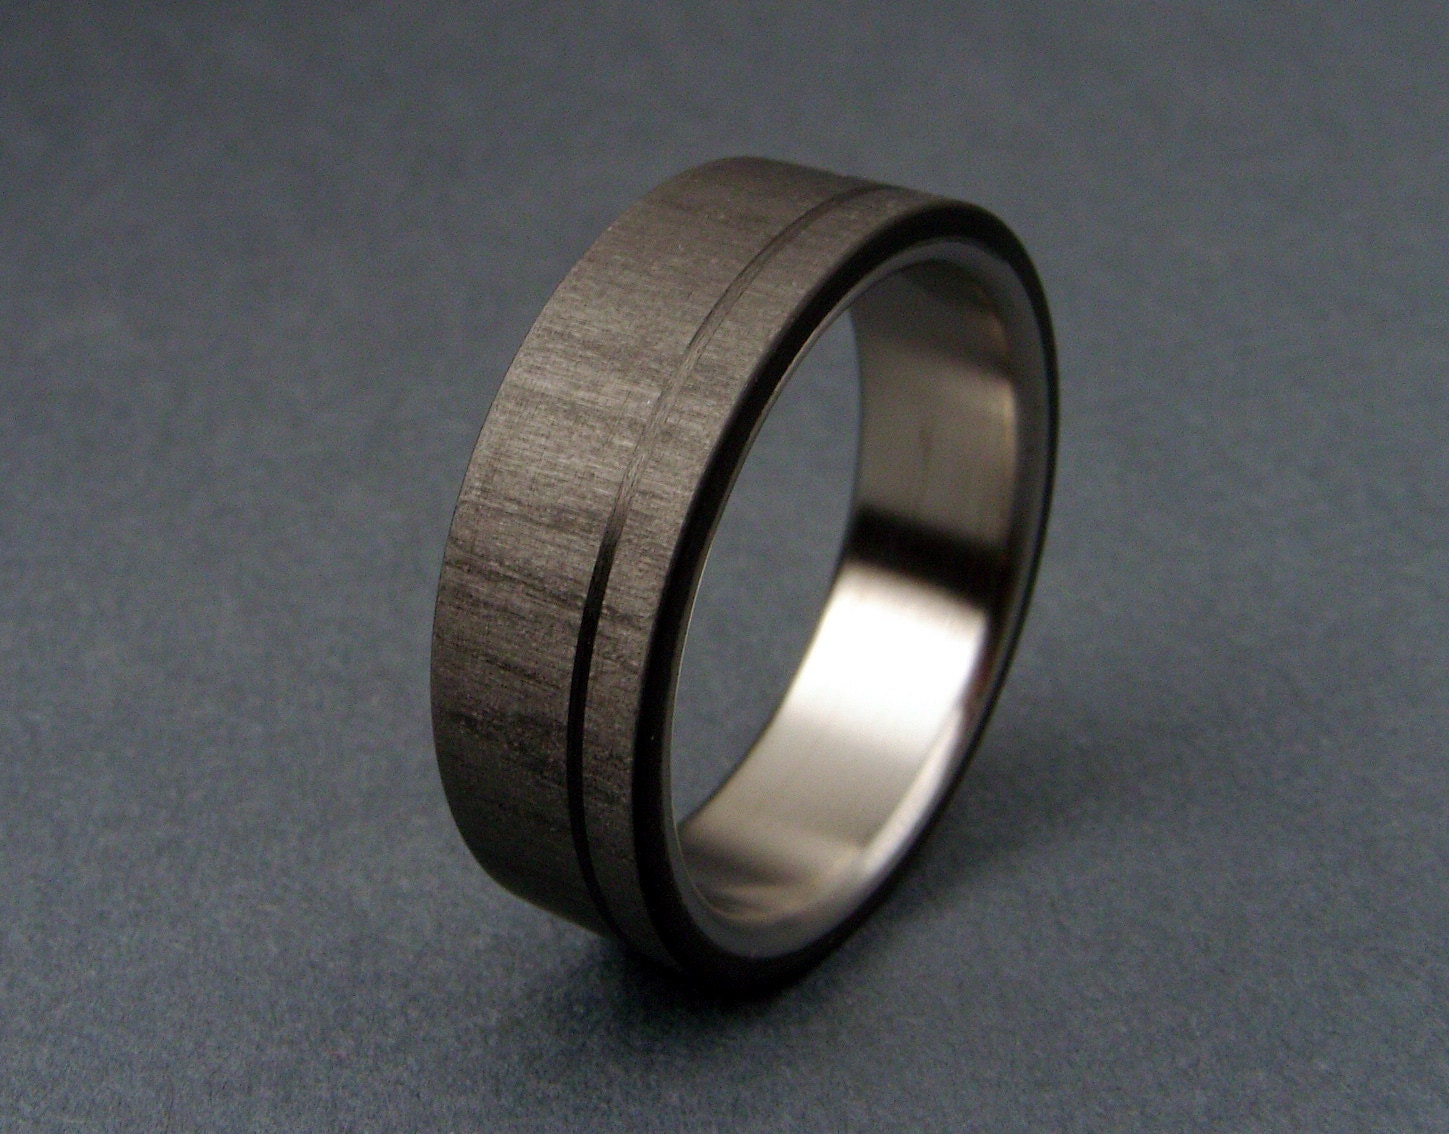 Carbon Fiber and Titanium ring